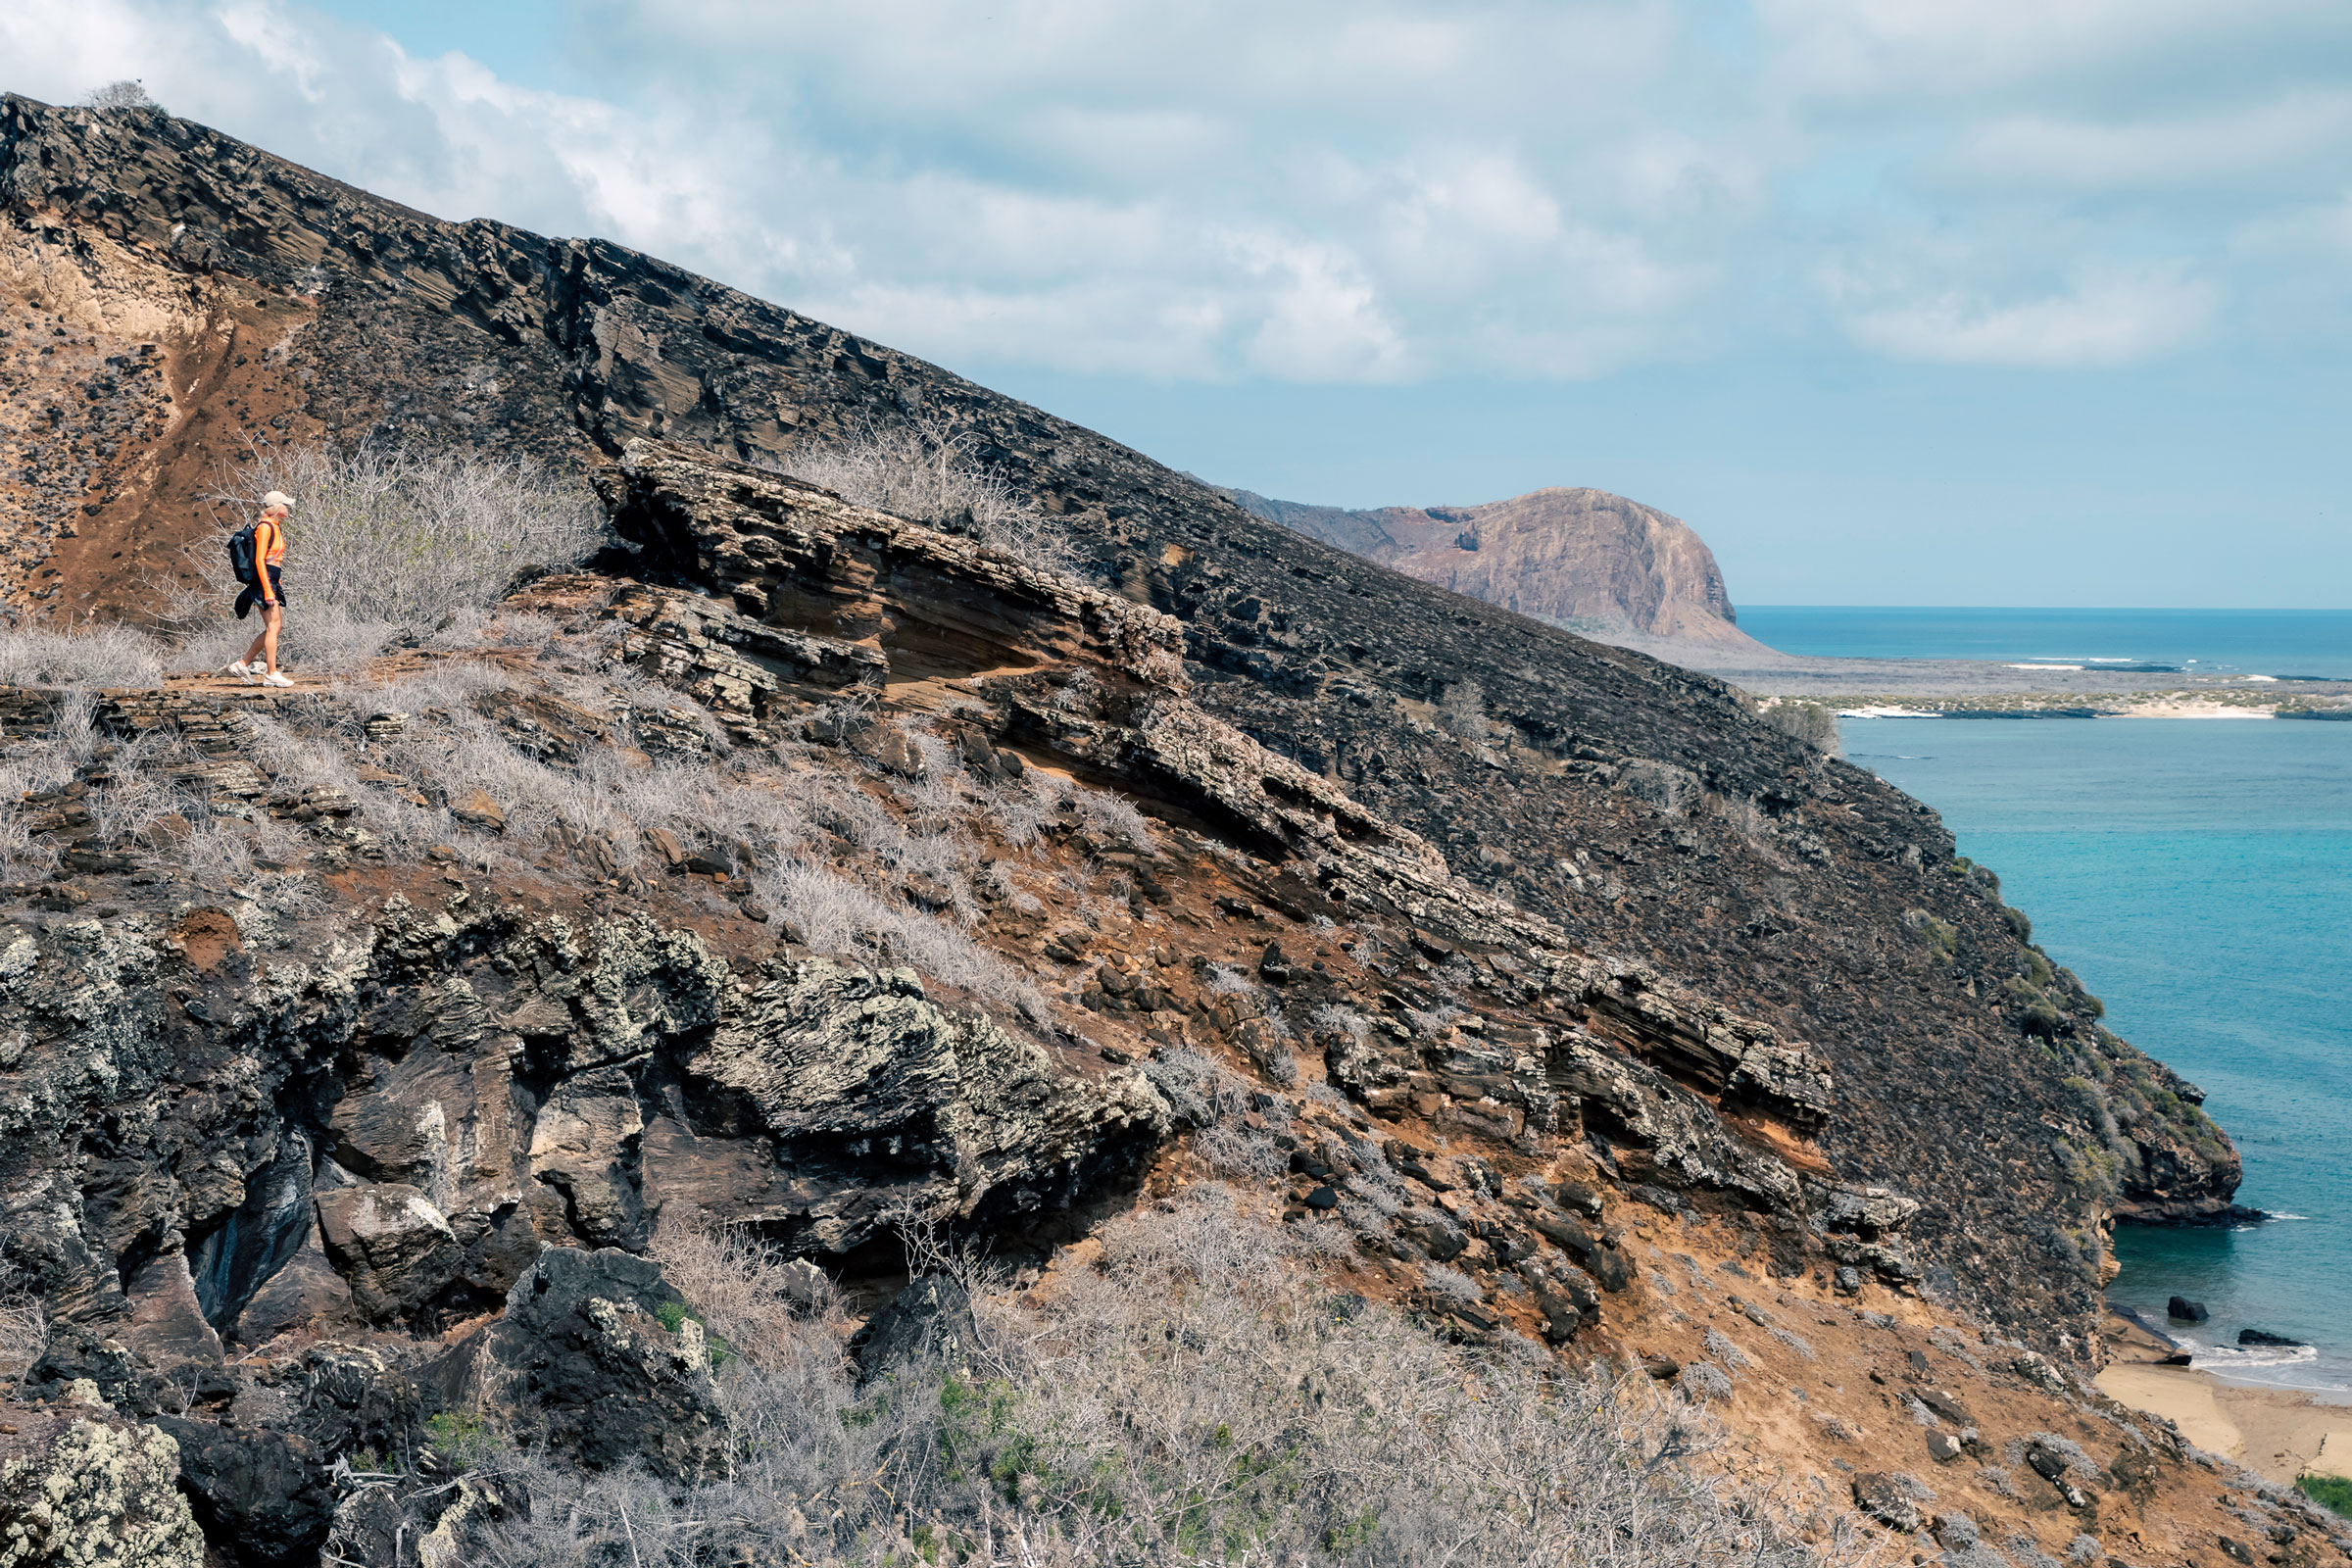 Exploring Ecotourism and the Galápagos Islands